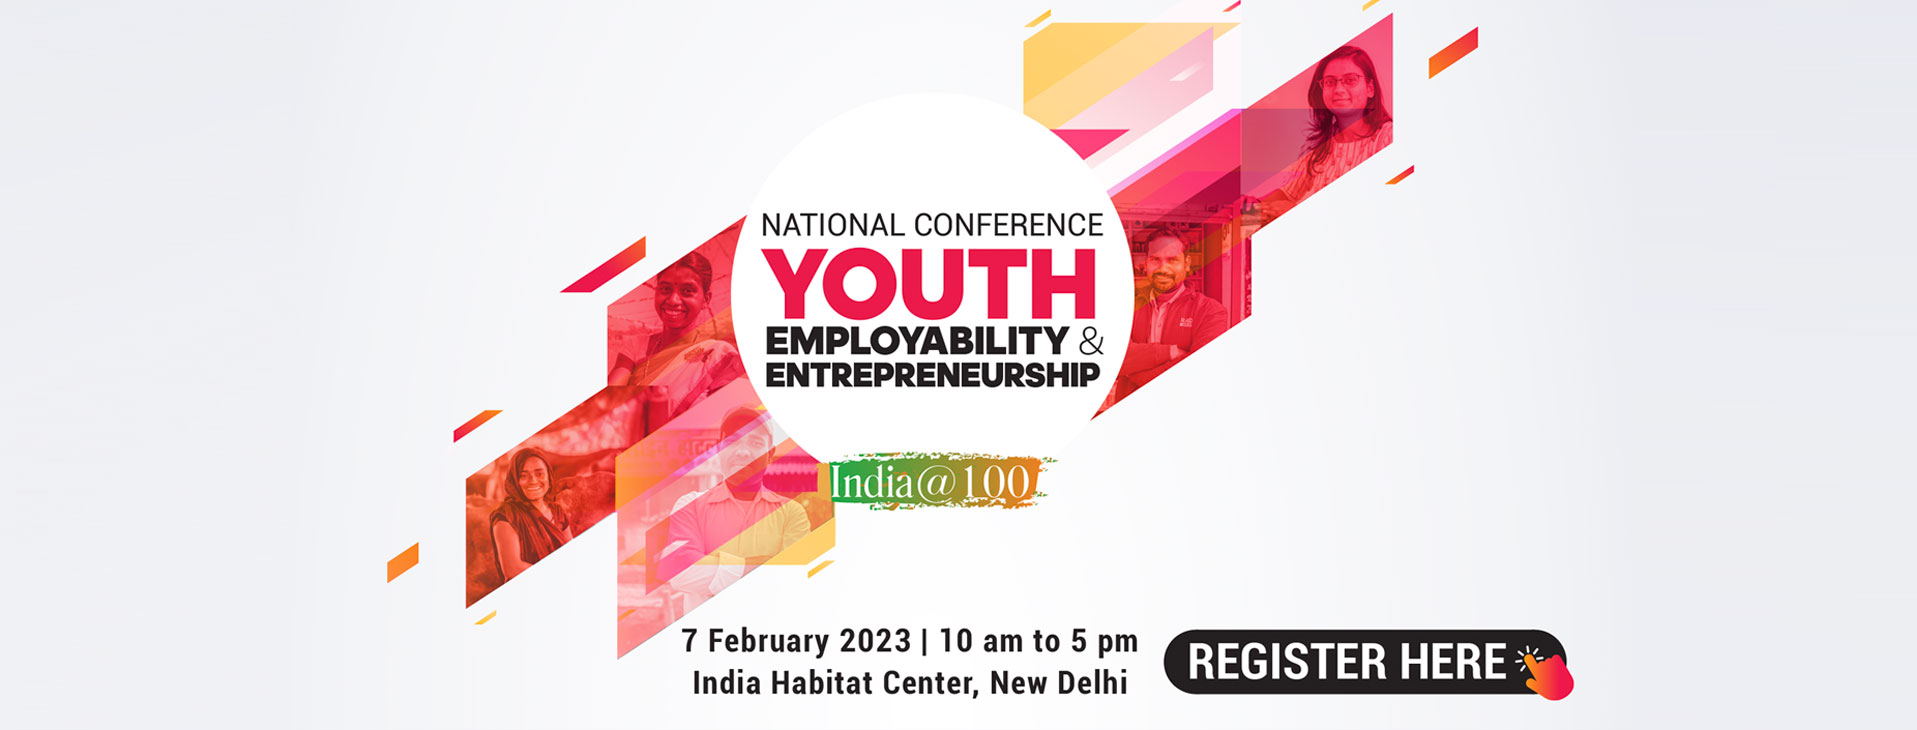 National Conference Youth Employability & Entrepreneurship India 100